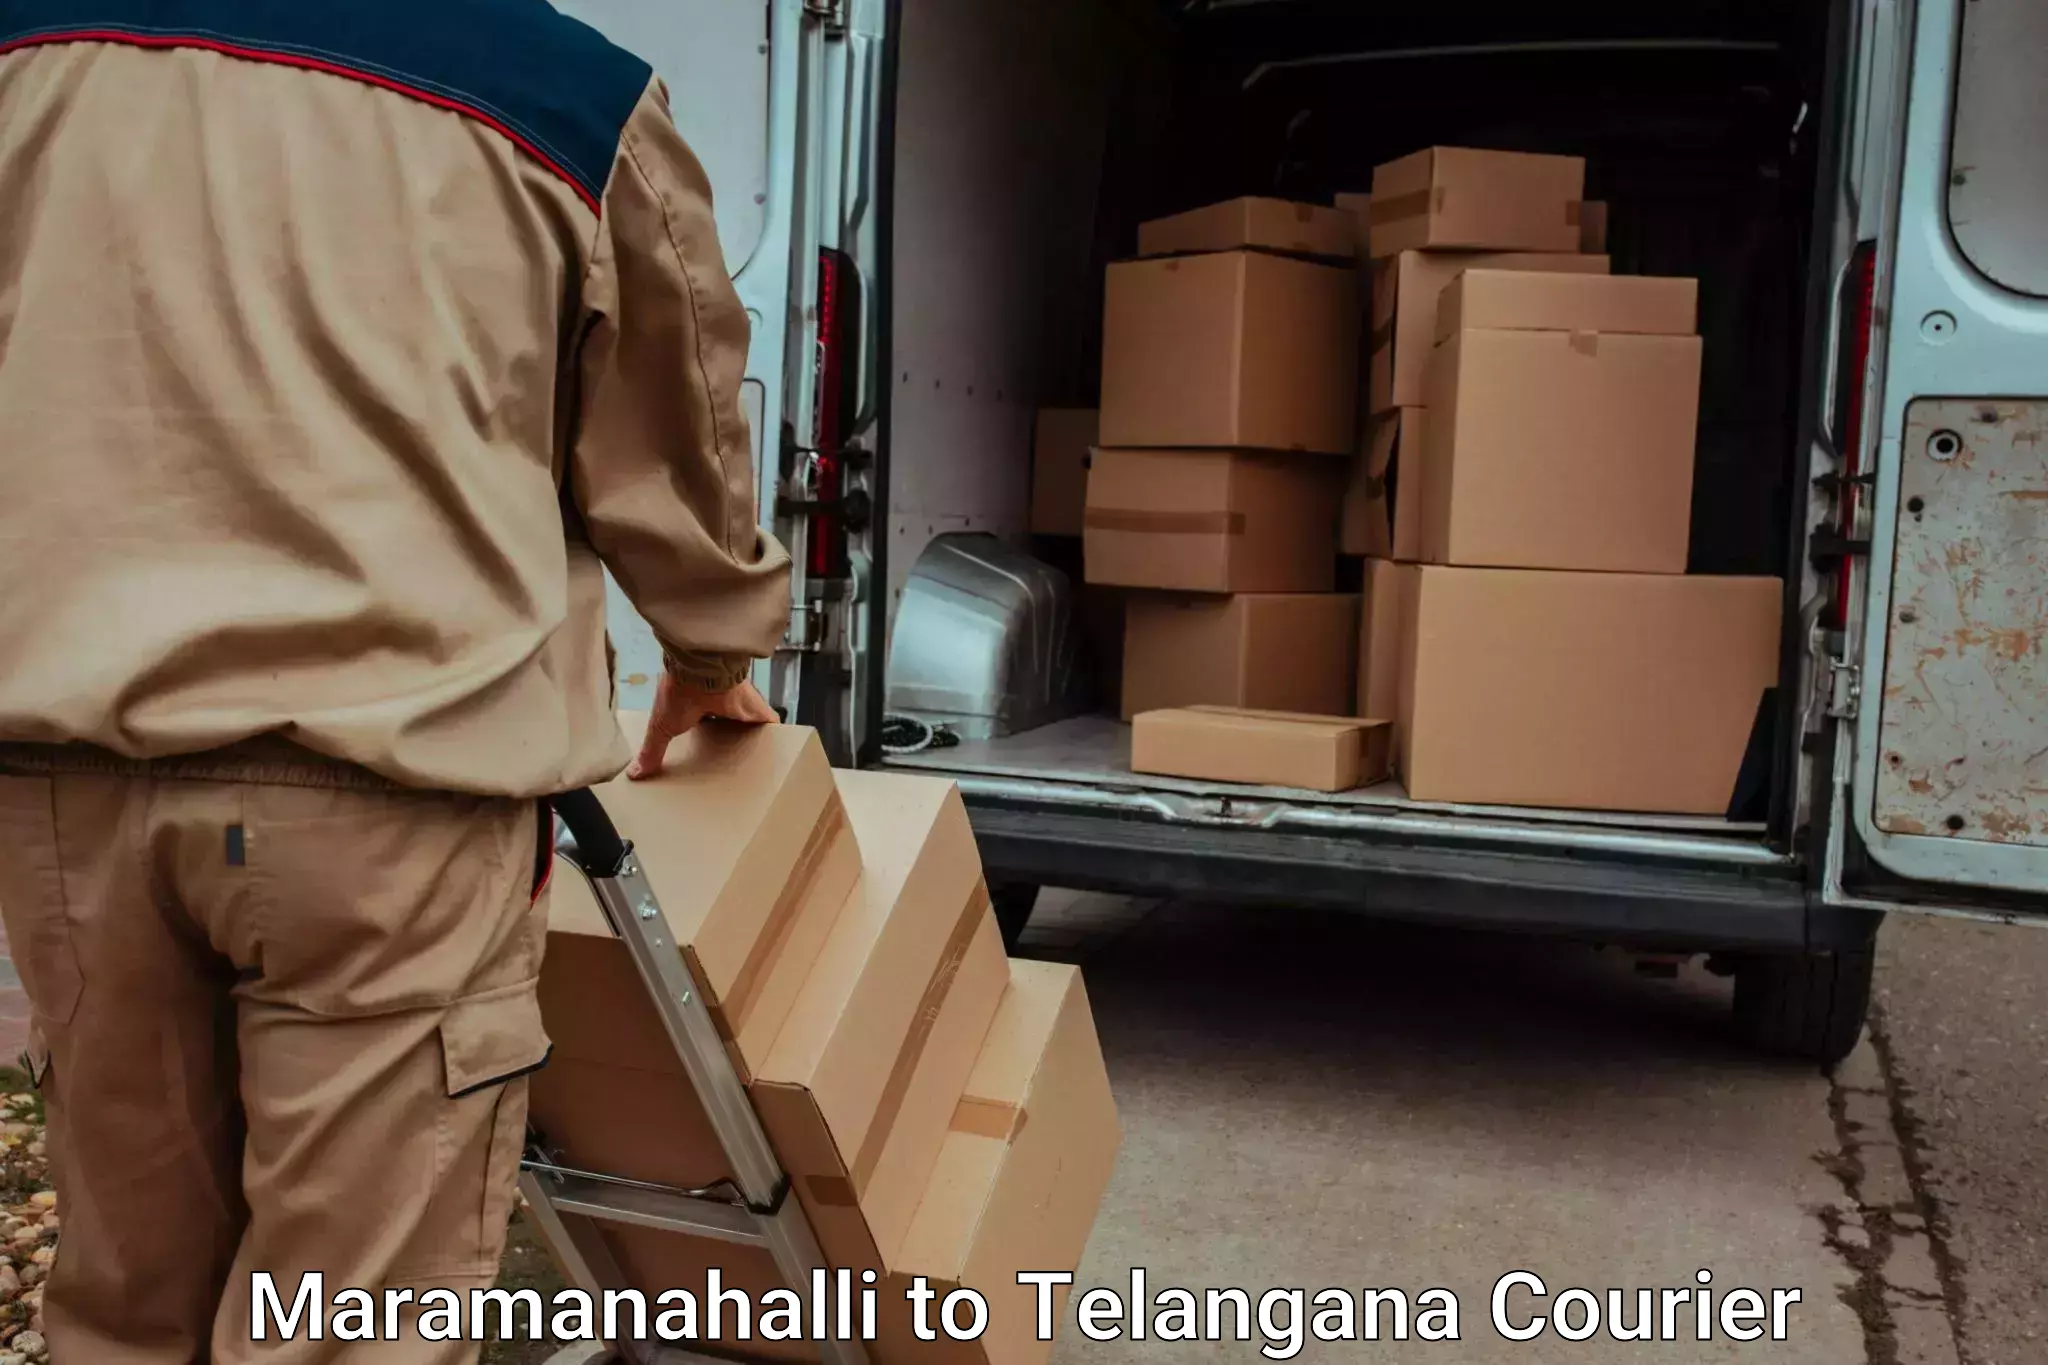 Quick relocation services Maramanahalli to Bellampalli